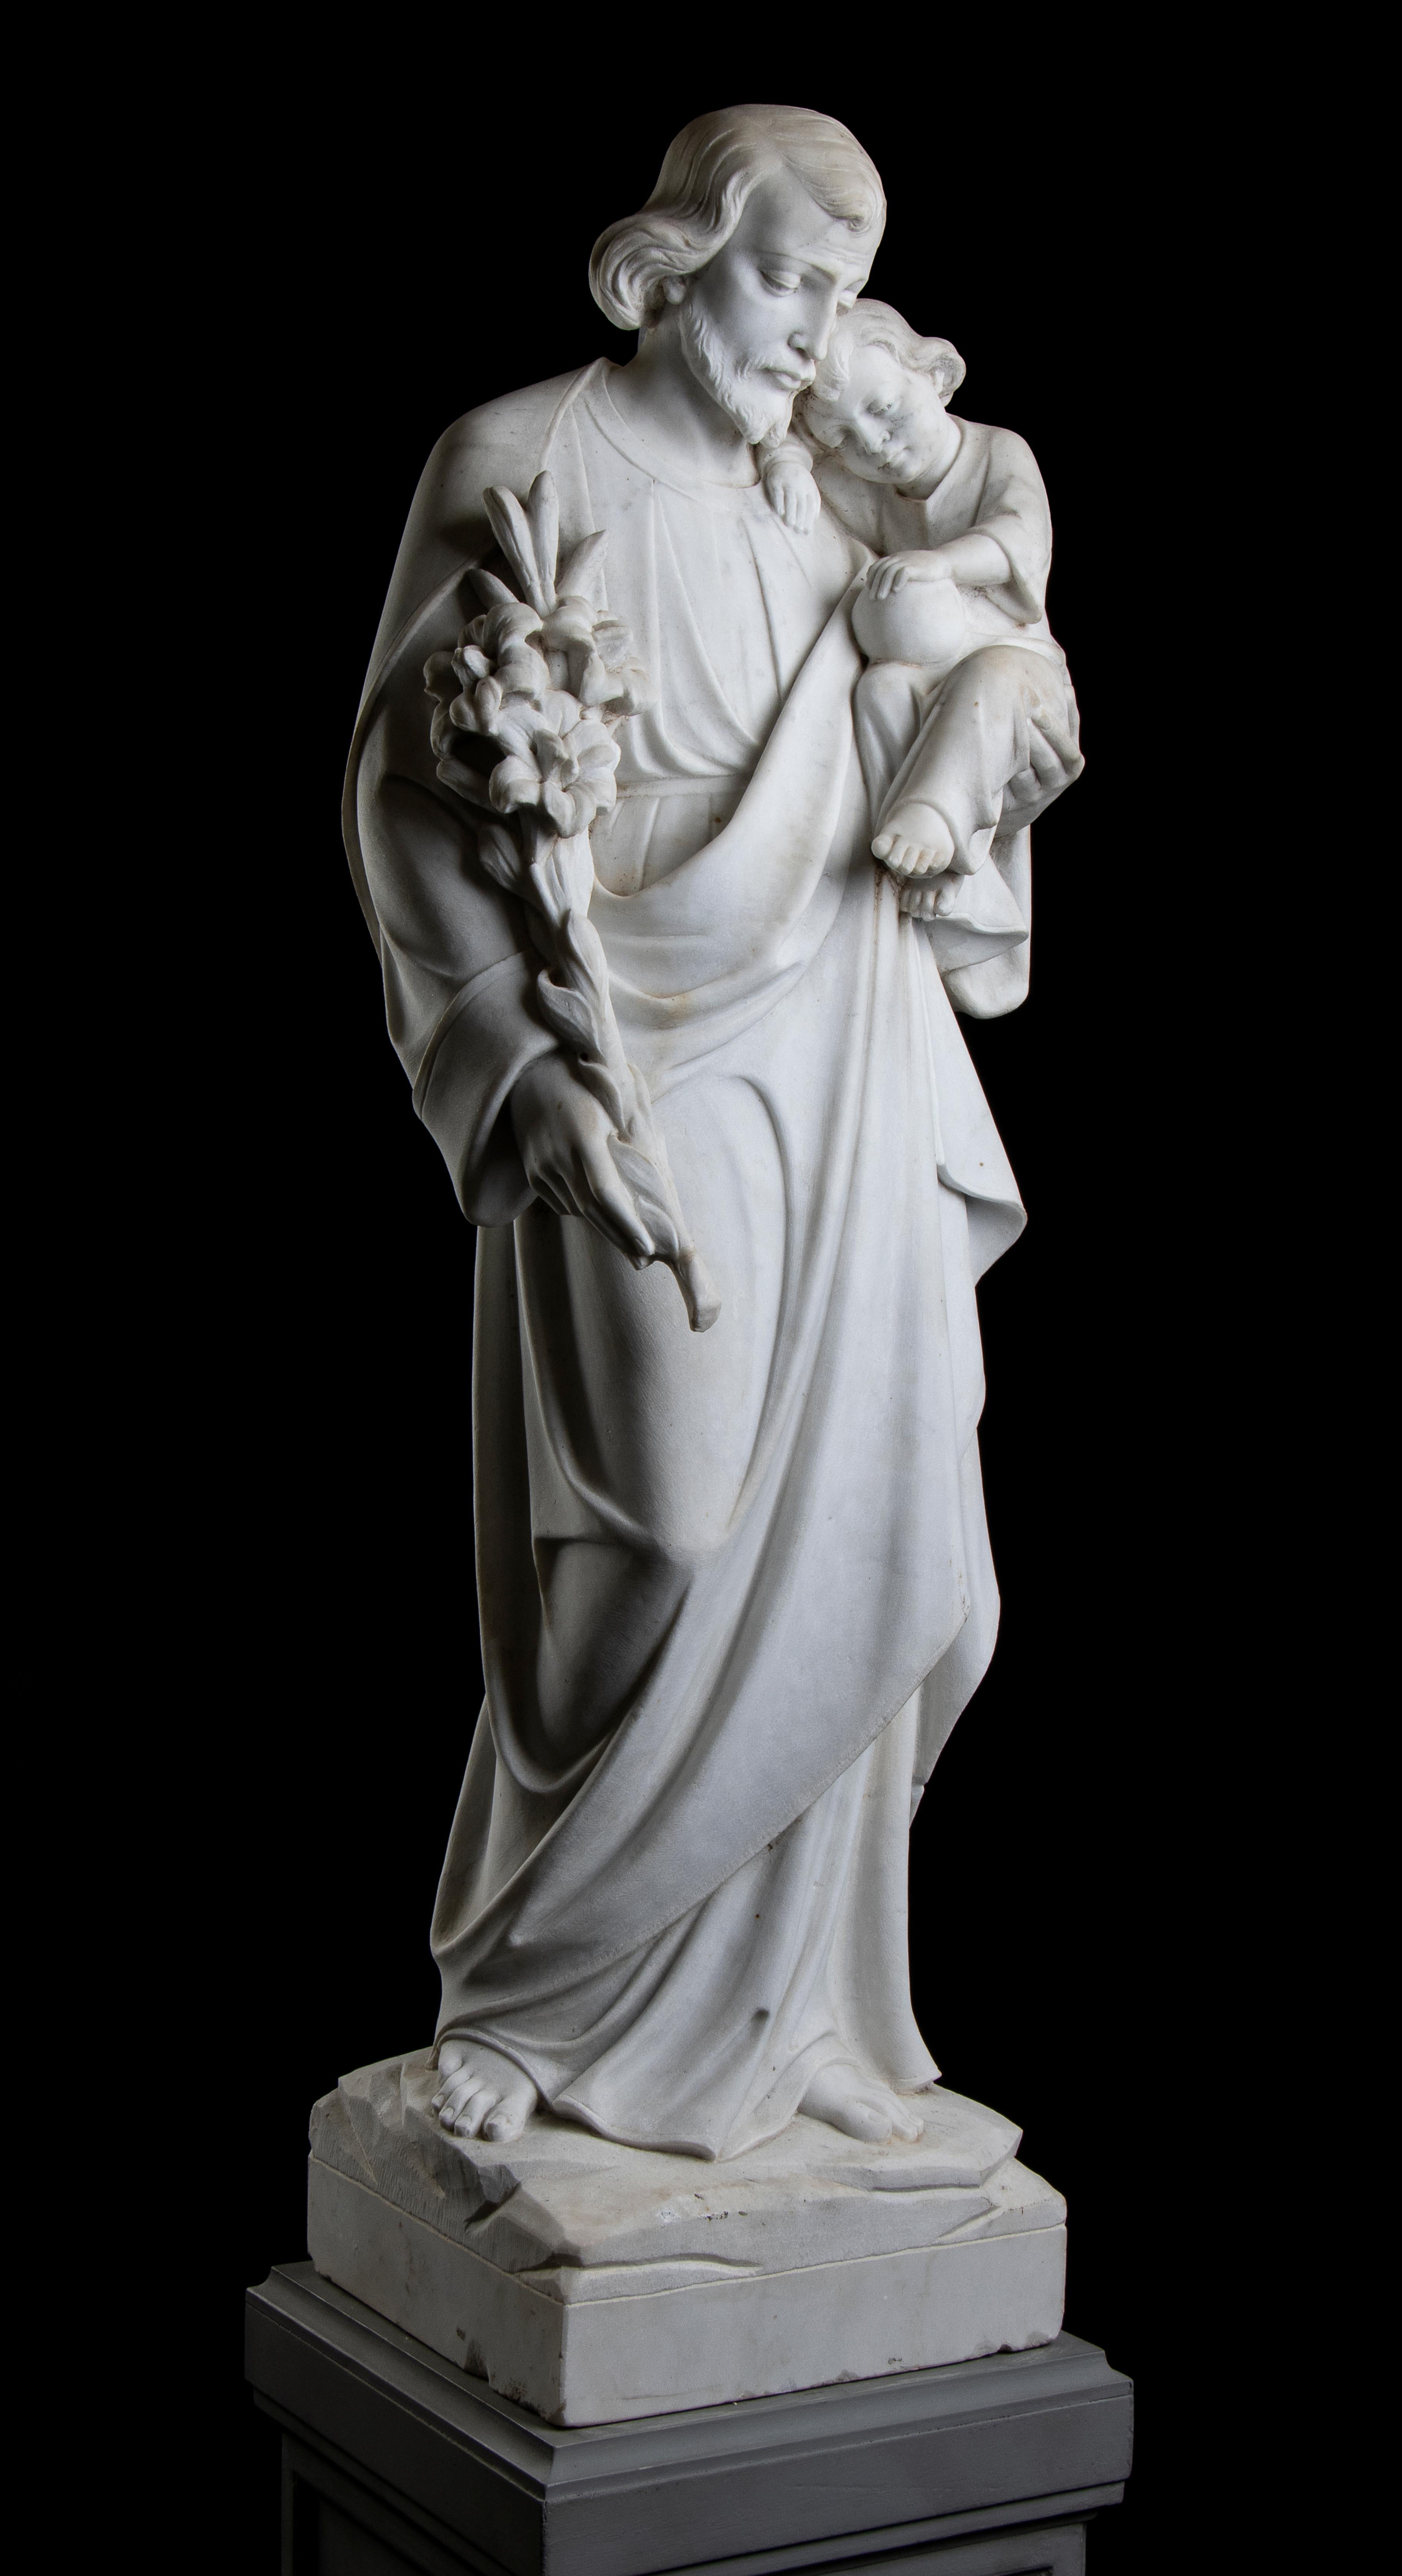 Très intéressante sculpture statuaire italienne en marbre blanc représentant saint Jospeh avec Jésus-Christ enfant, école italienne du XIXe siècle.
Saint Joseph représenté en pied, la fleur de lys dans la main droite et reposant le long de son bras